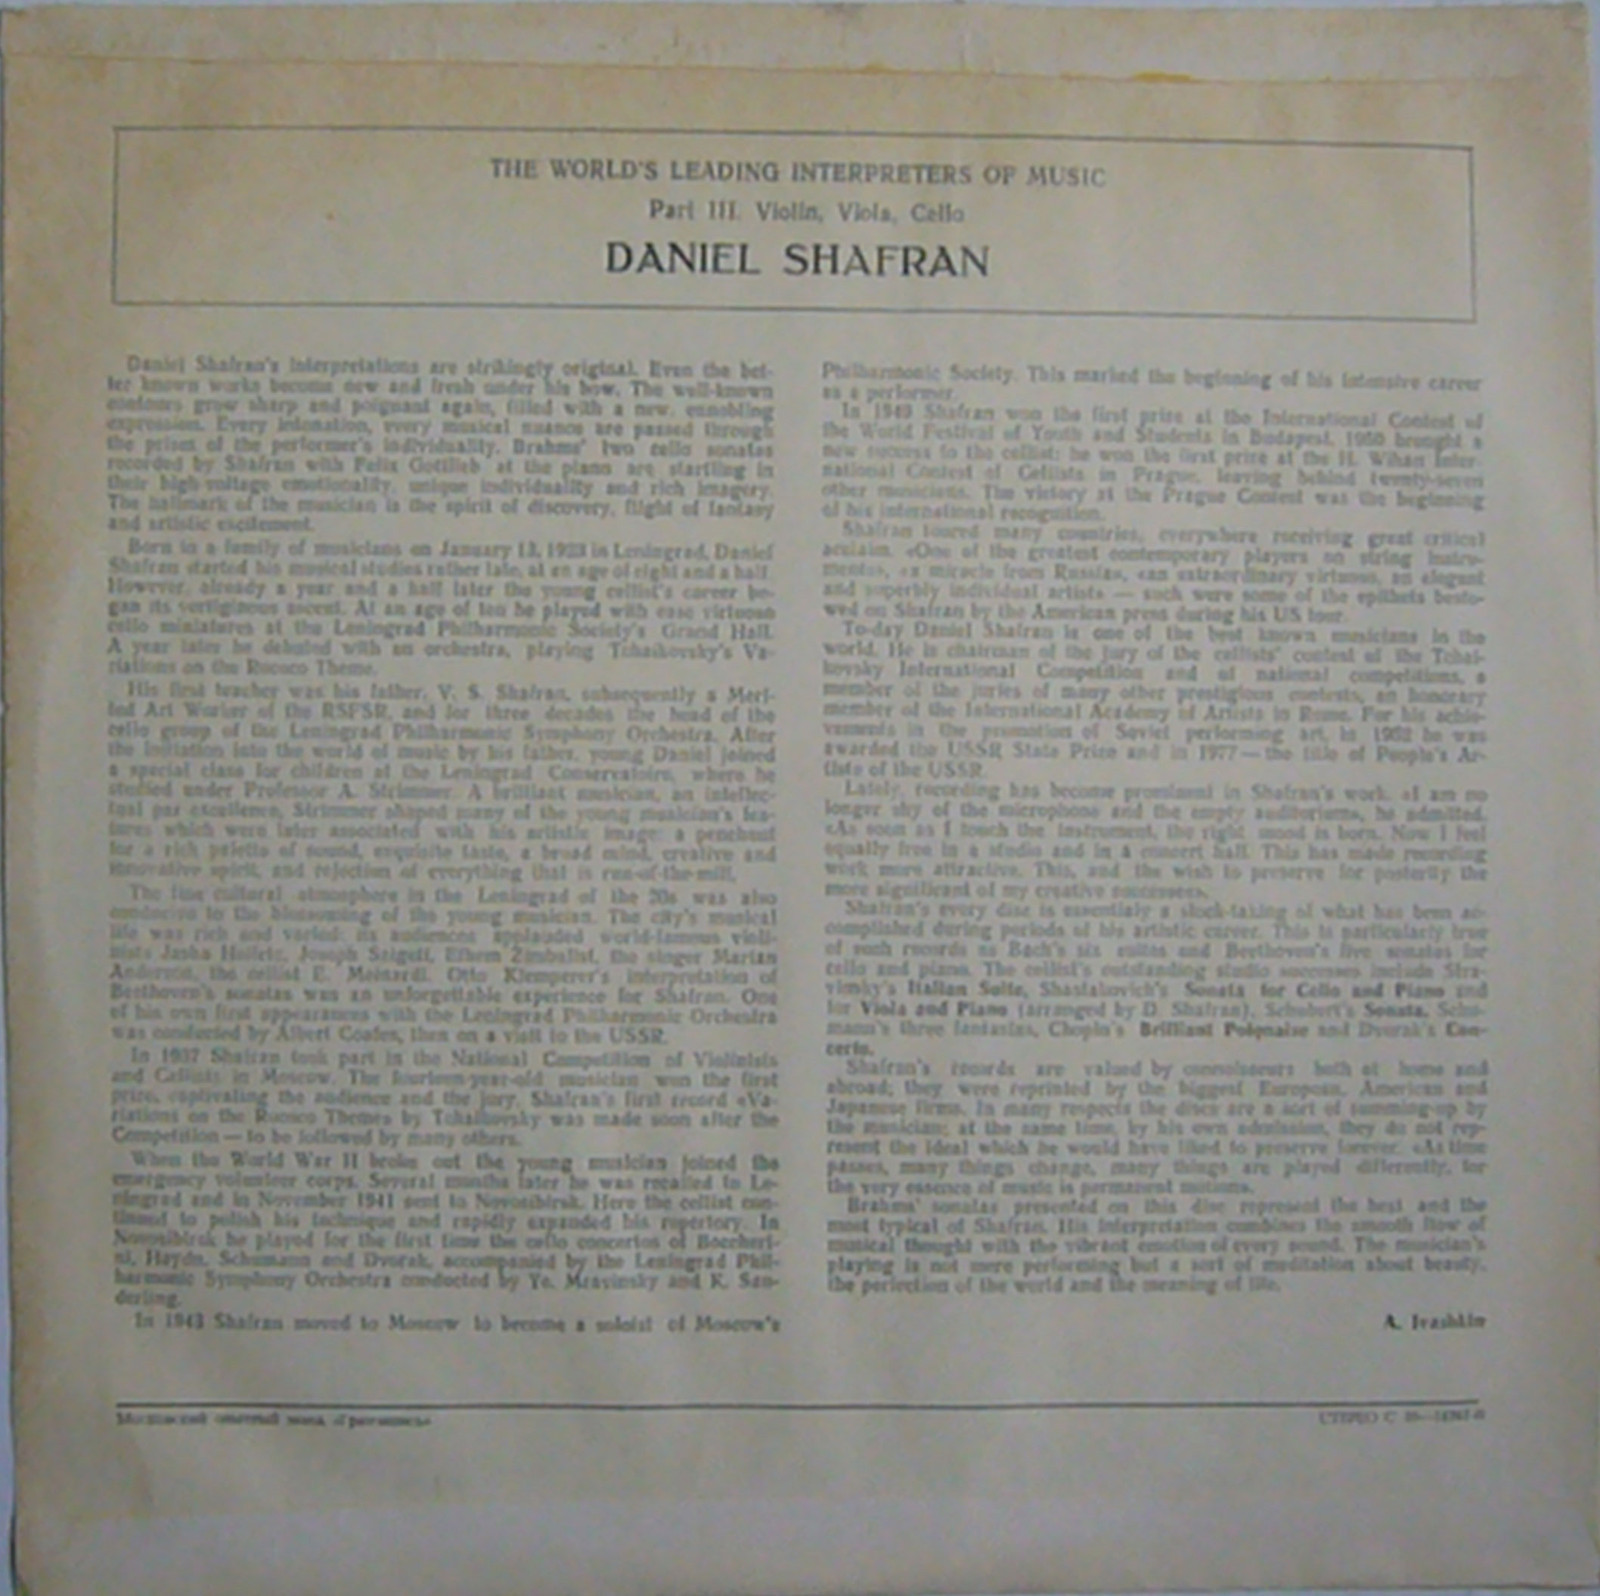 И. БРАМС (1833-1897): Сонаты для виолончели и ф-но (Д. Шафран, Ф. Готлиб)